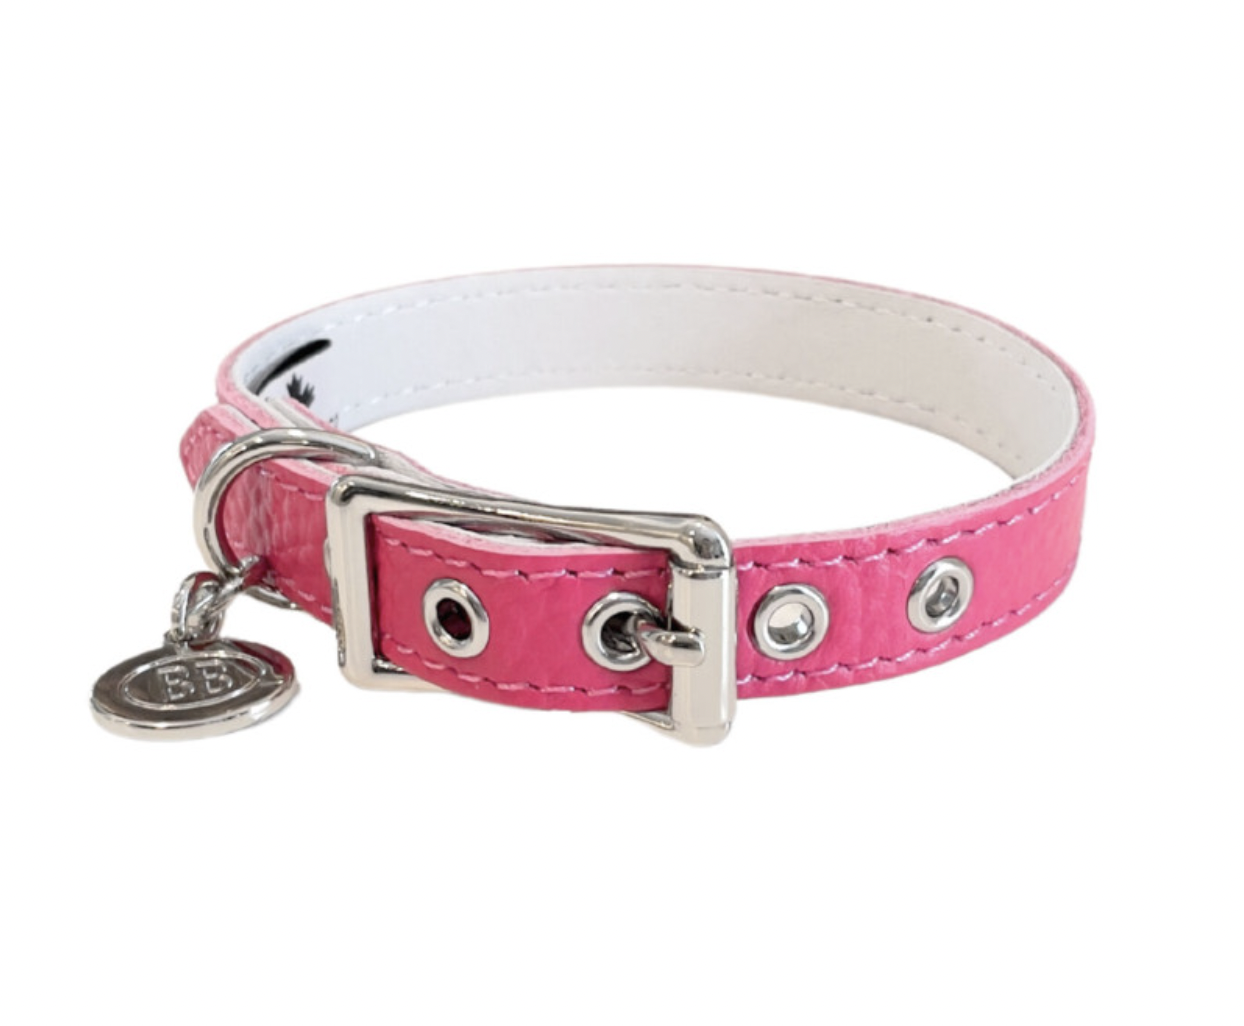 Buddy Belt Collar - Hot Pink